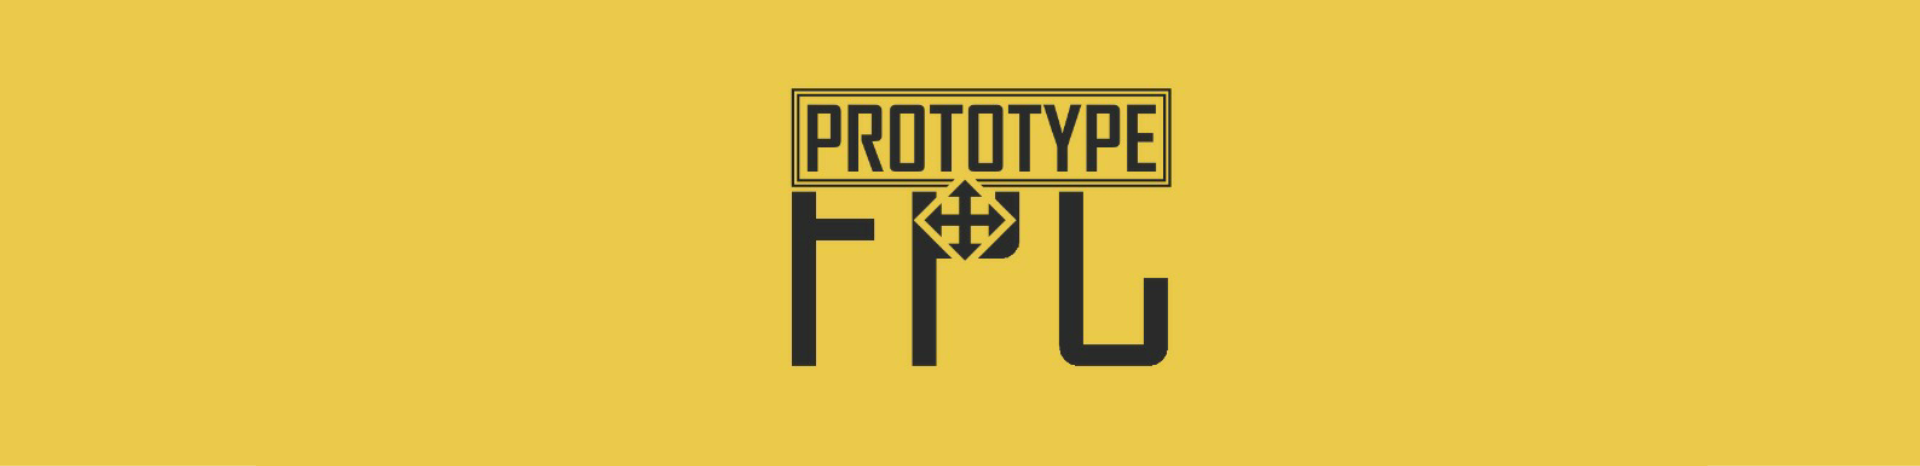 Prototype FPC